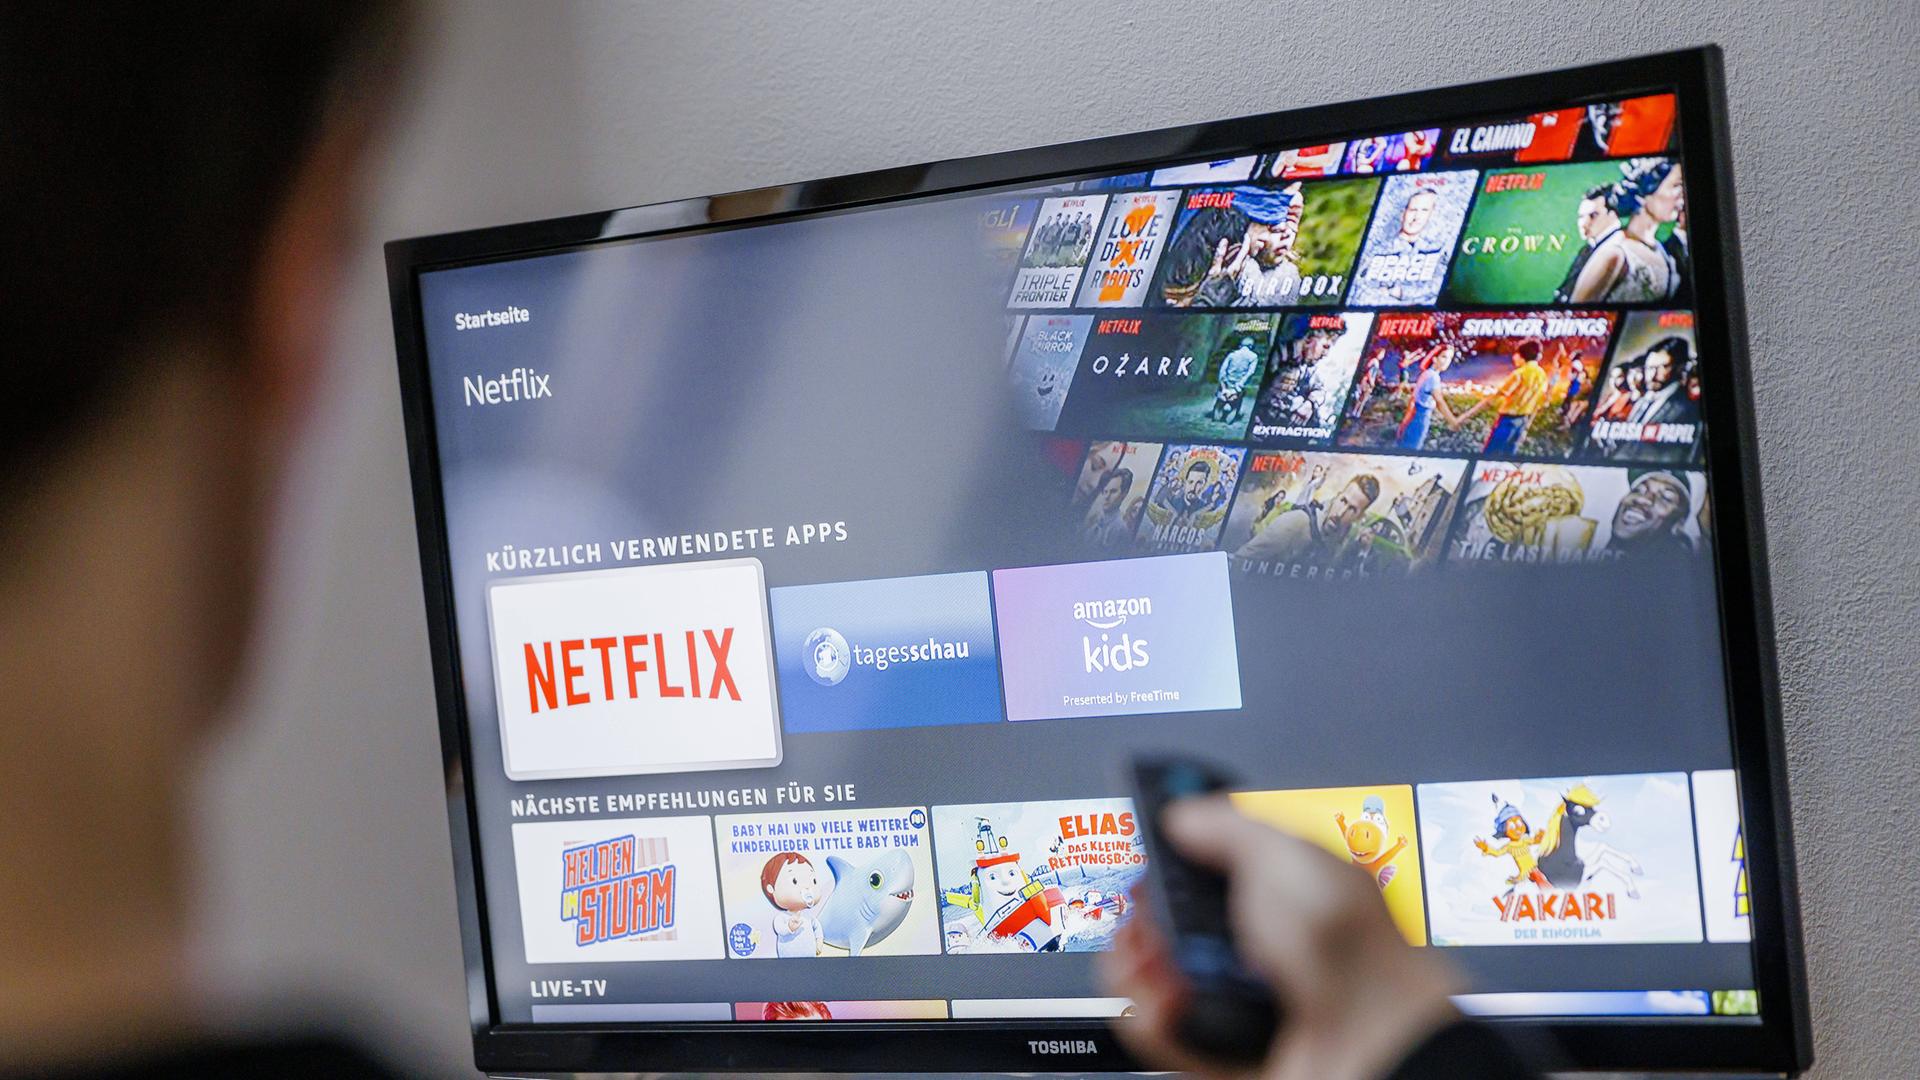 Auf einem TV-Bildschirm sind Logos von Medienplattformen zu sehen, darunter hervorgehoben dasjenige von Netflix.